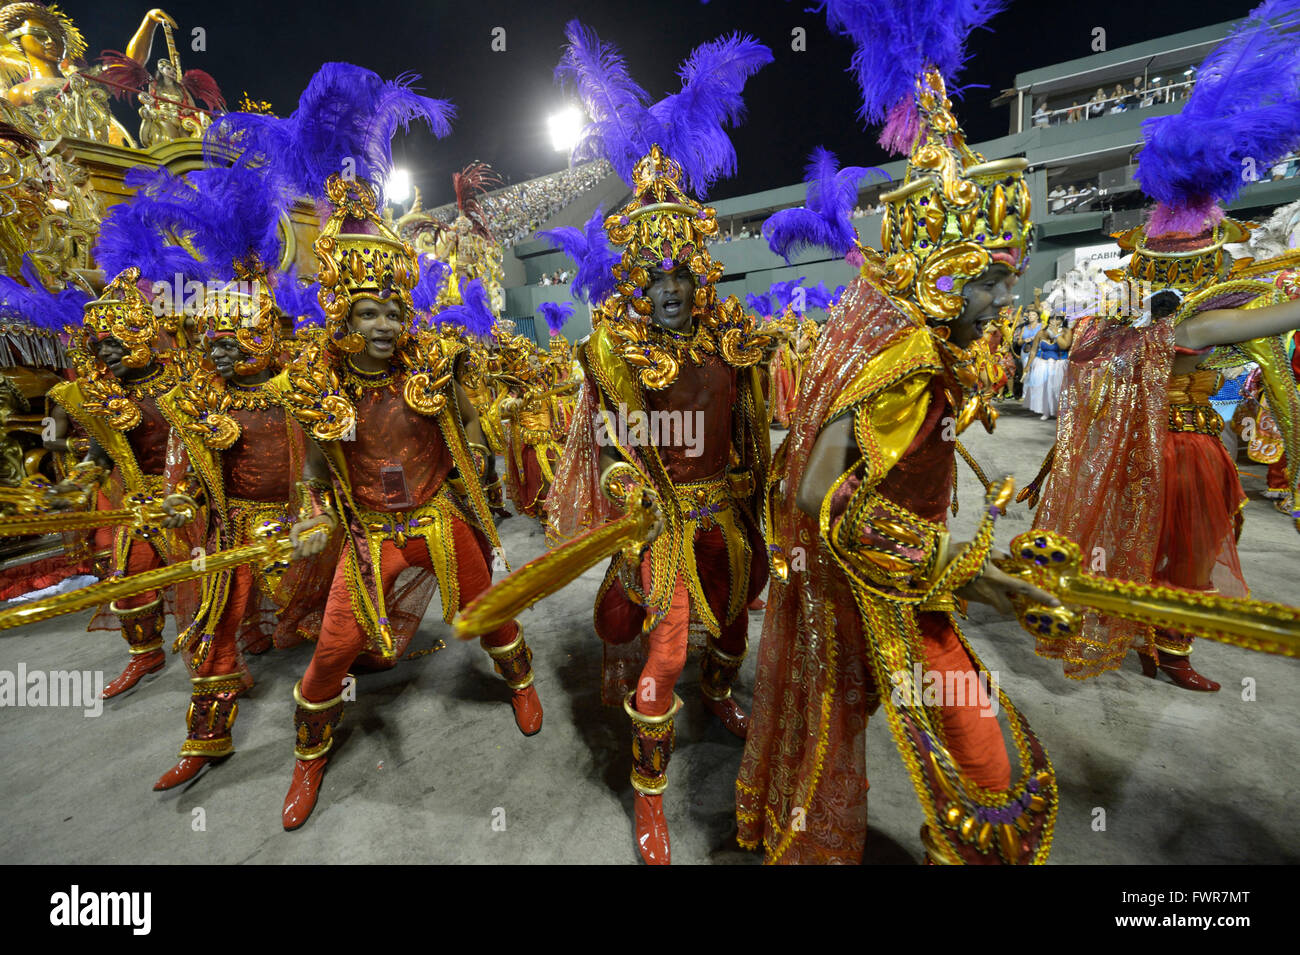 Les danseurs de samba en costume comme soldats romains, défilé de l'école de samba Beija Flor de Nilópolis, Sambódromo, Rio de Janeiro Banque D'Images